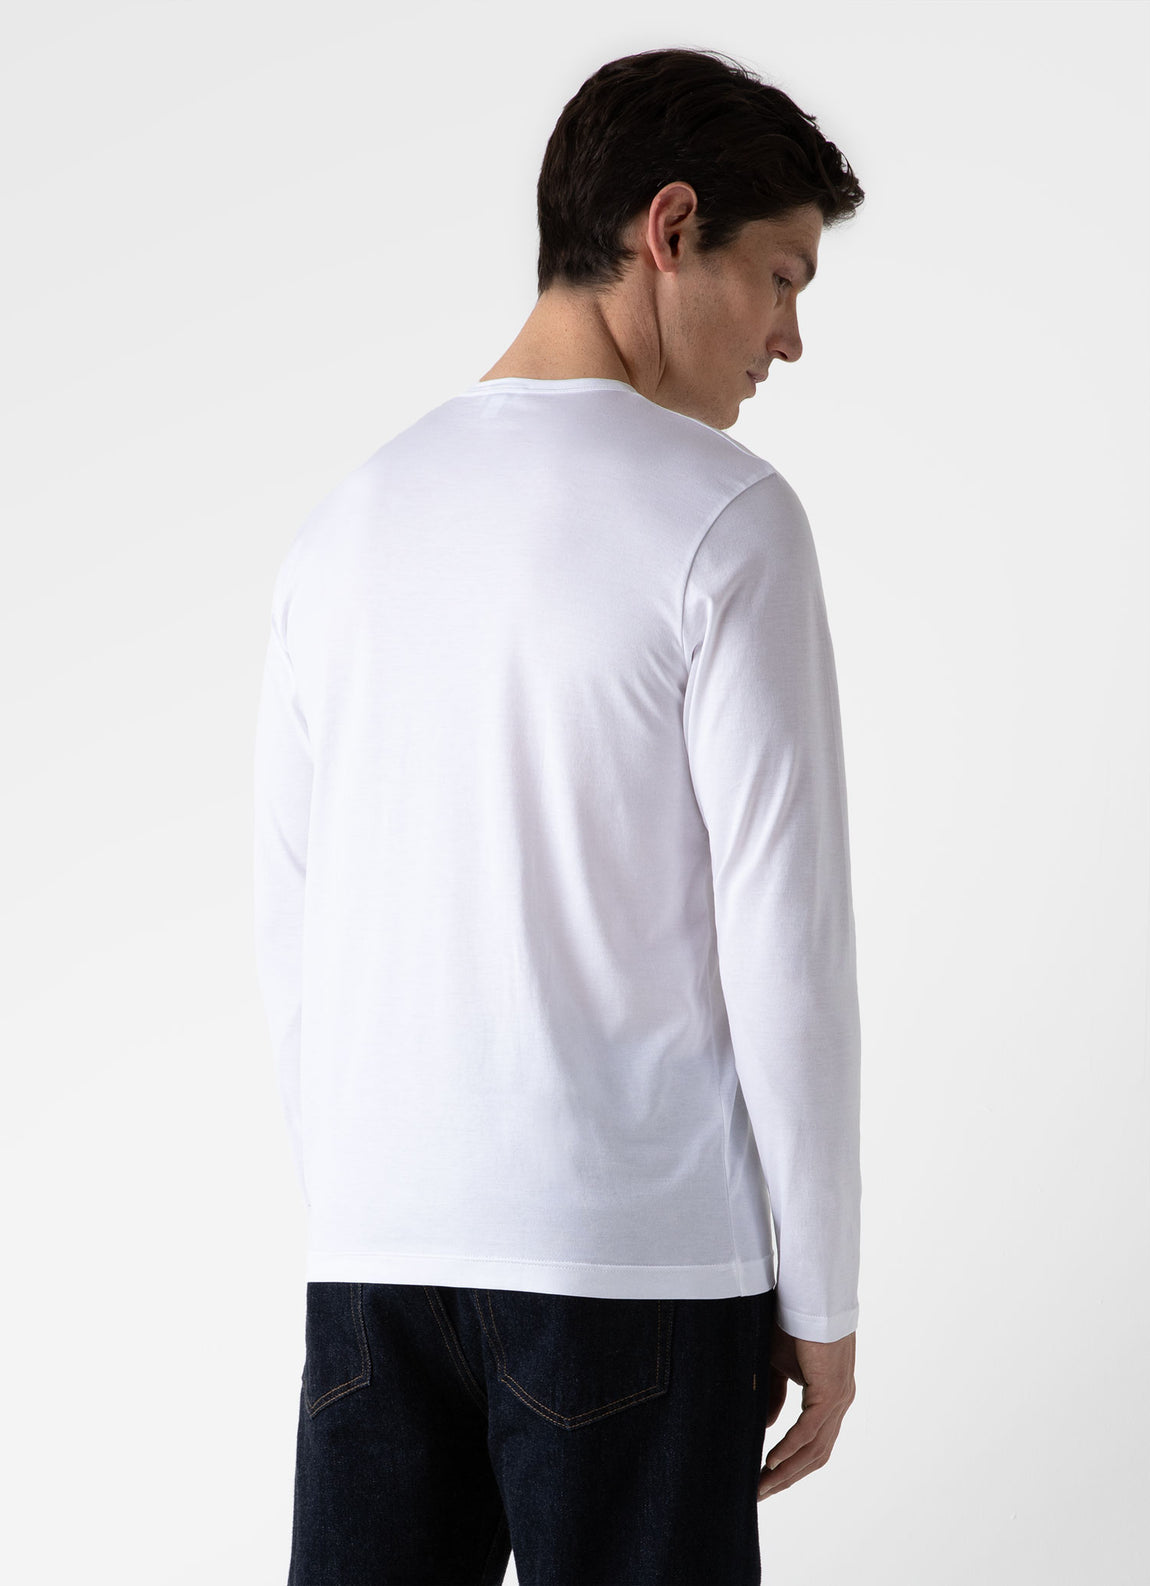 Men's Long Sleeve Classic T-shirt in White | Sunspel